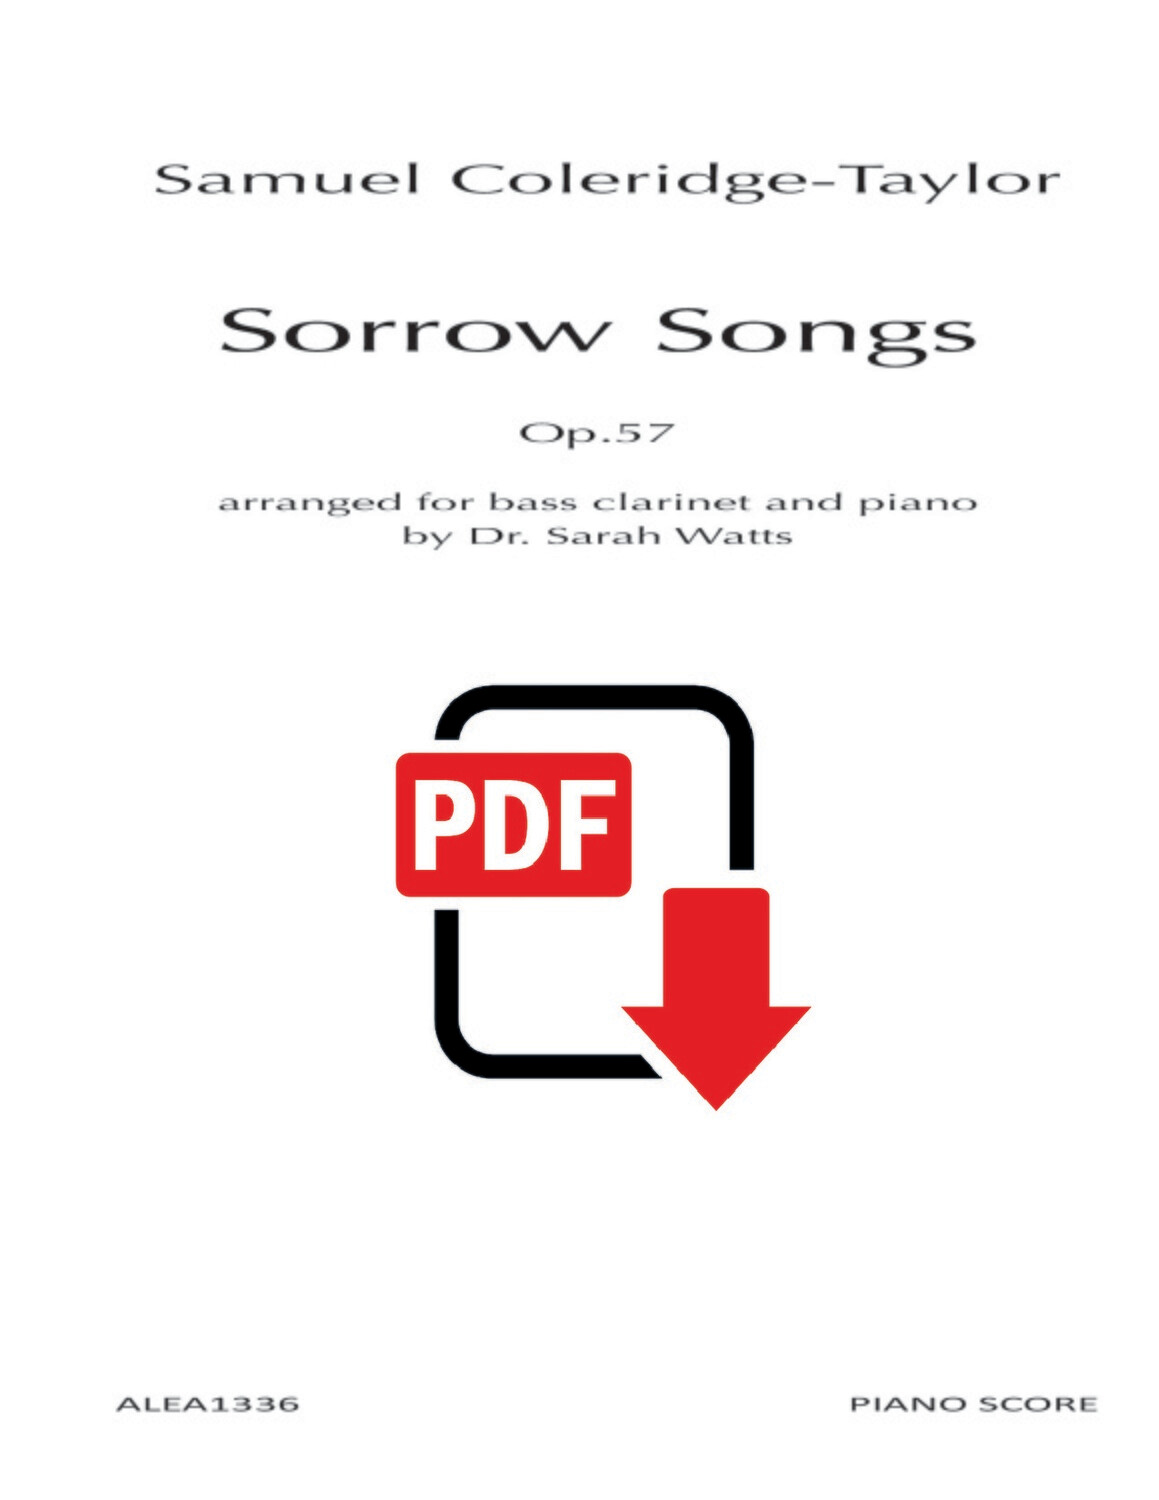 Coleridge-Taylor: Sorrow Songs Op.57 (PDF)